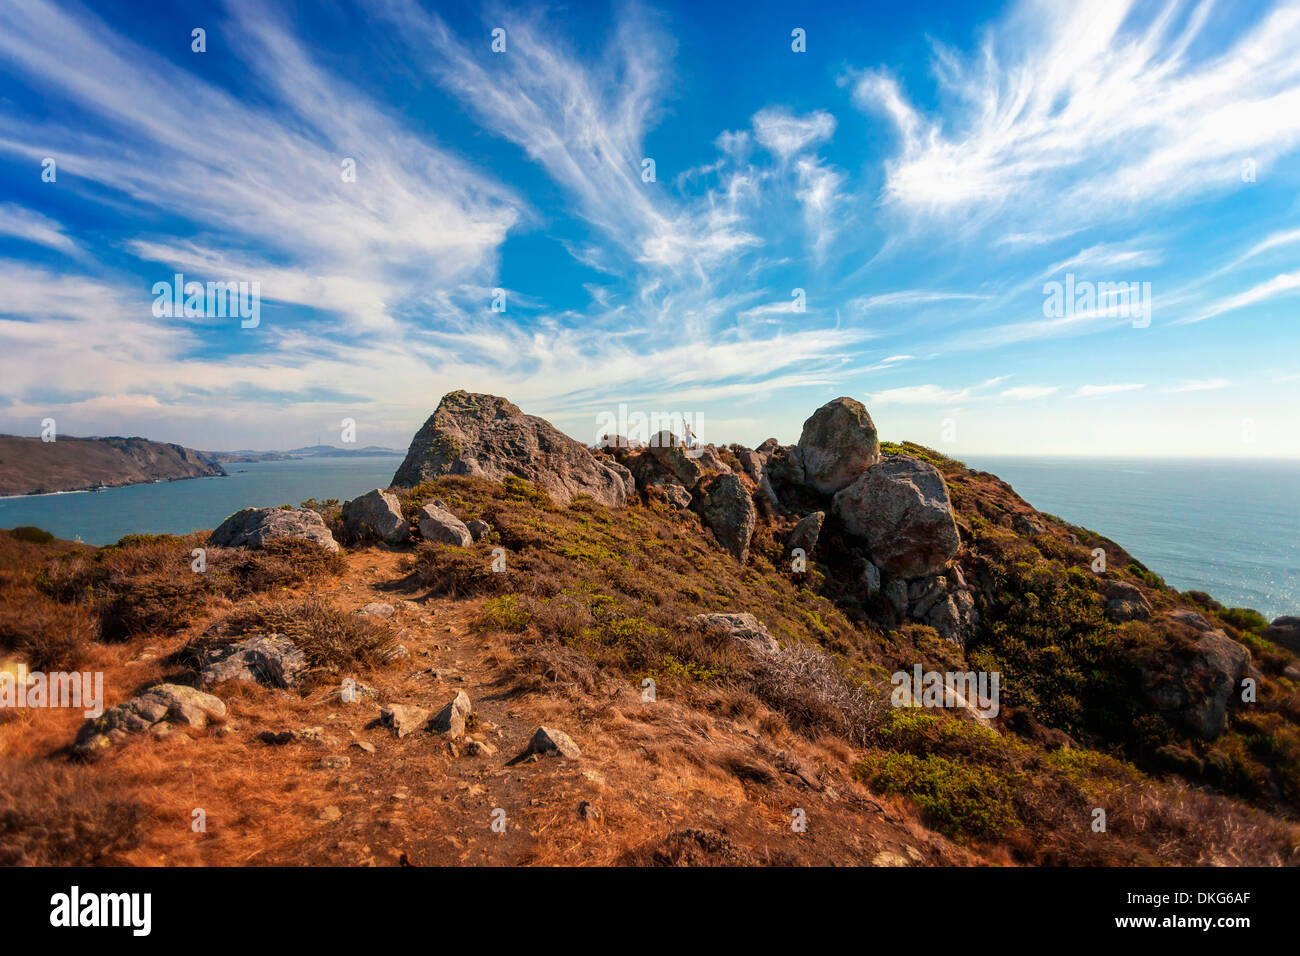 Una piccola figura onde la distanza che si affaccia su un paesaggio marino roccioso sulla costa della California in un drammatico cielo blu con nuvole Foto Stock